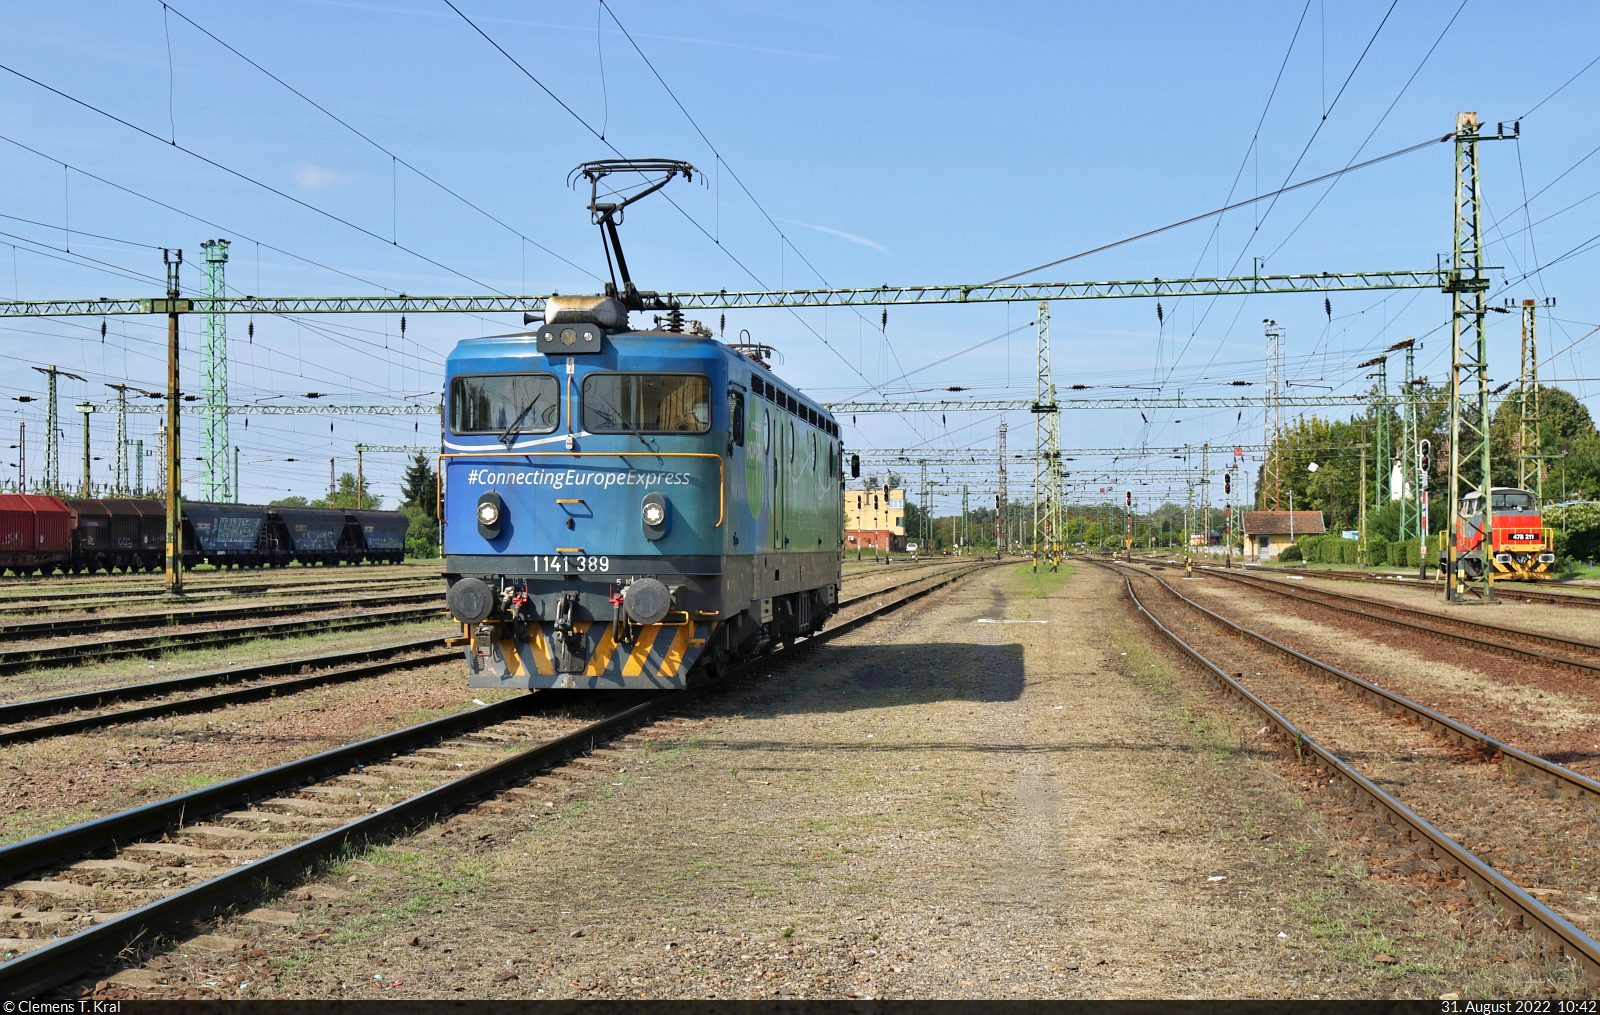 Im Grenzbahnhof Gyékényes (HU) werden die von Ungarn kommenden und nach Kroatien weiterfahrenden Züge umgespannt. Für die kurze Strecke nach Koprivnica (HR) – ab dort fuhr wegen Bauarbeiten Schienenersatzverkehr – gab sich die 2021 beim Connecting Europe Express (CEE) eingesetzte 1141 389-2 überraschend die Ehre. Sie bewegt sich gerade an die Wagen heran und wurde vom Bahnsteigende fotografiert.

🧰 HŽ Putnički prijevoz (HŽPP)
🚝 IC 200  Gradec–Tópart Intercity  Budapest-Déli pu (HU)–Koprivnica (HR)
🕓 31.8.2022 | 10:42 Uhr